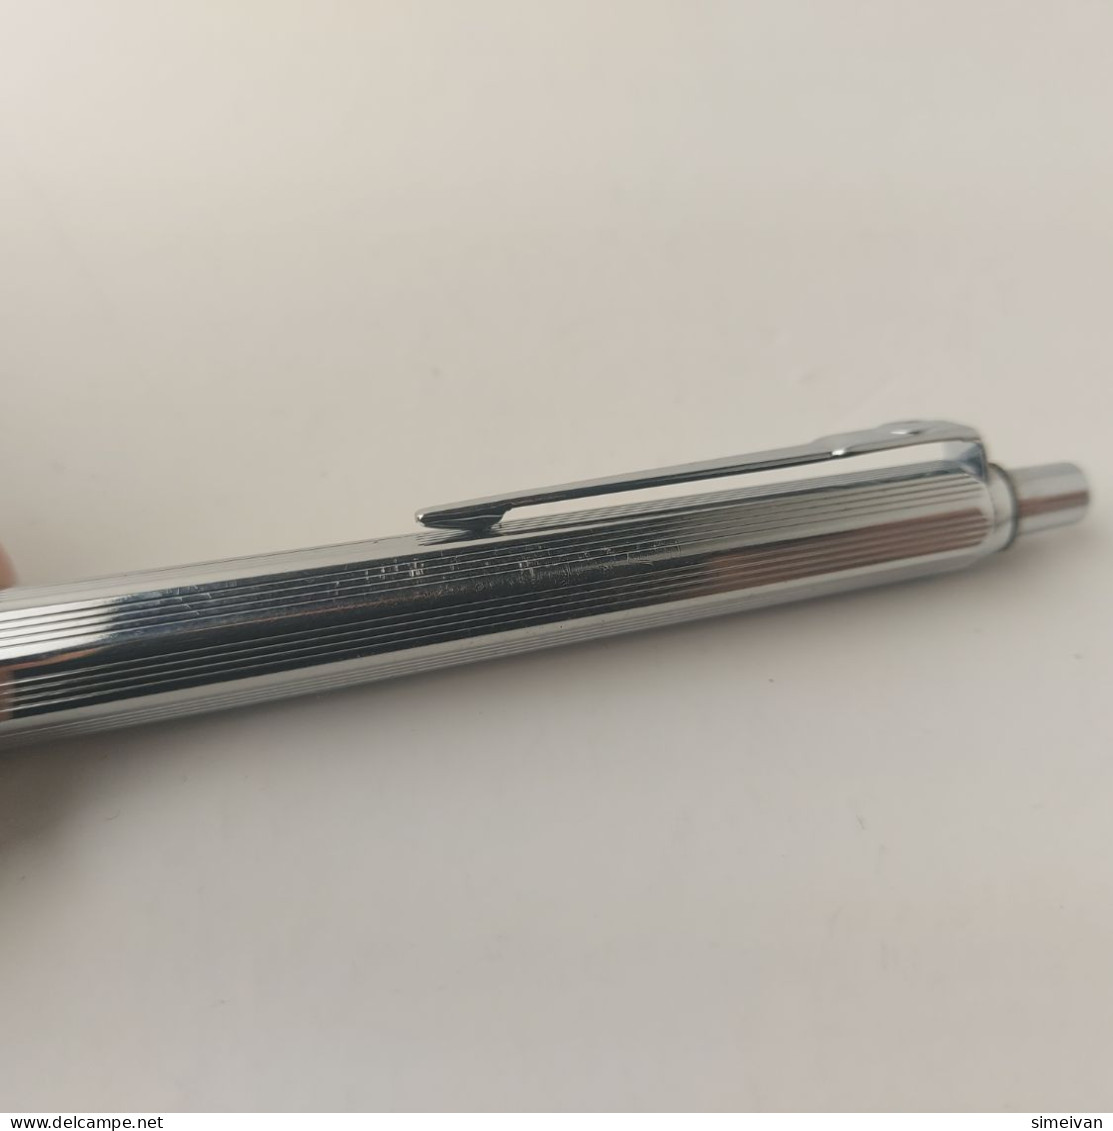 Vintage Ballograf Epoca Ballpoint Pen Black Chrome Plastic Made in Sweden #5506